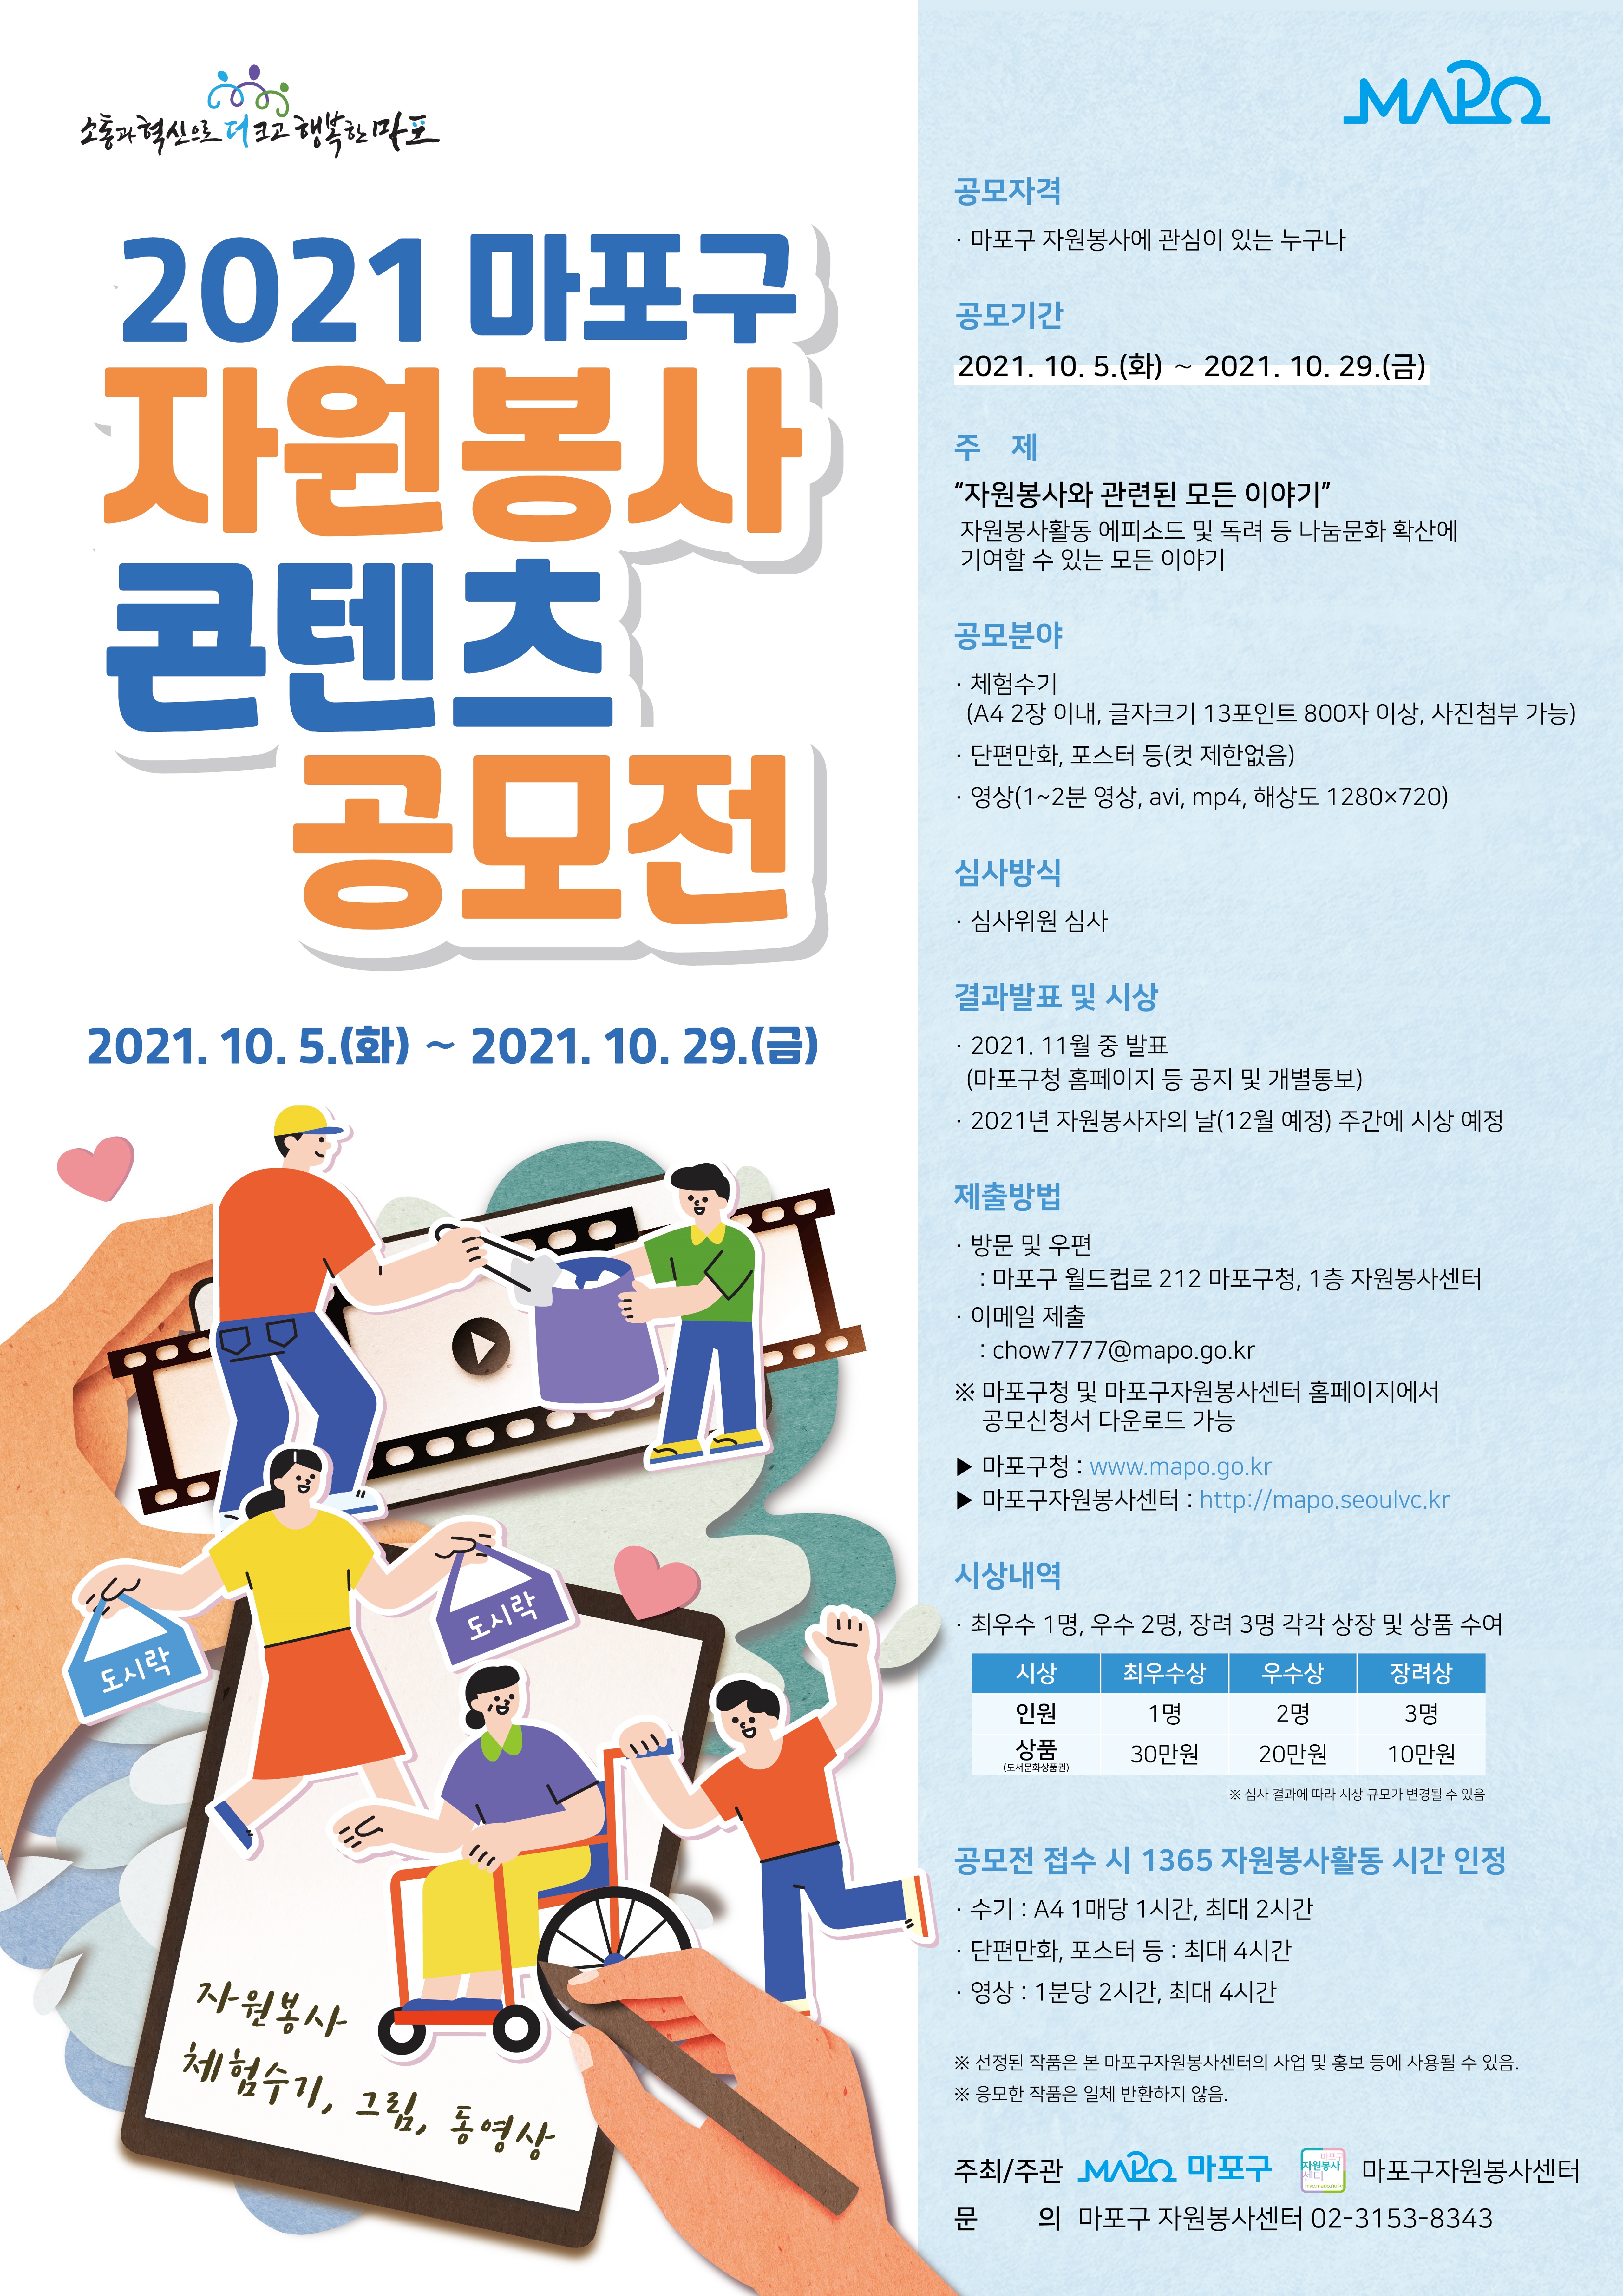 2021 마포구 자원봉사 콘텐츠 공모전 홍보 포스터.jpg